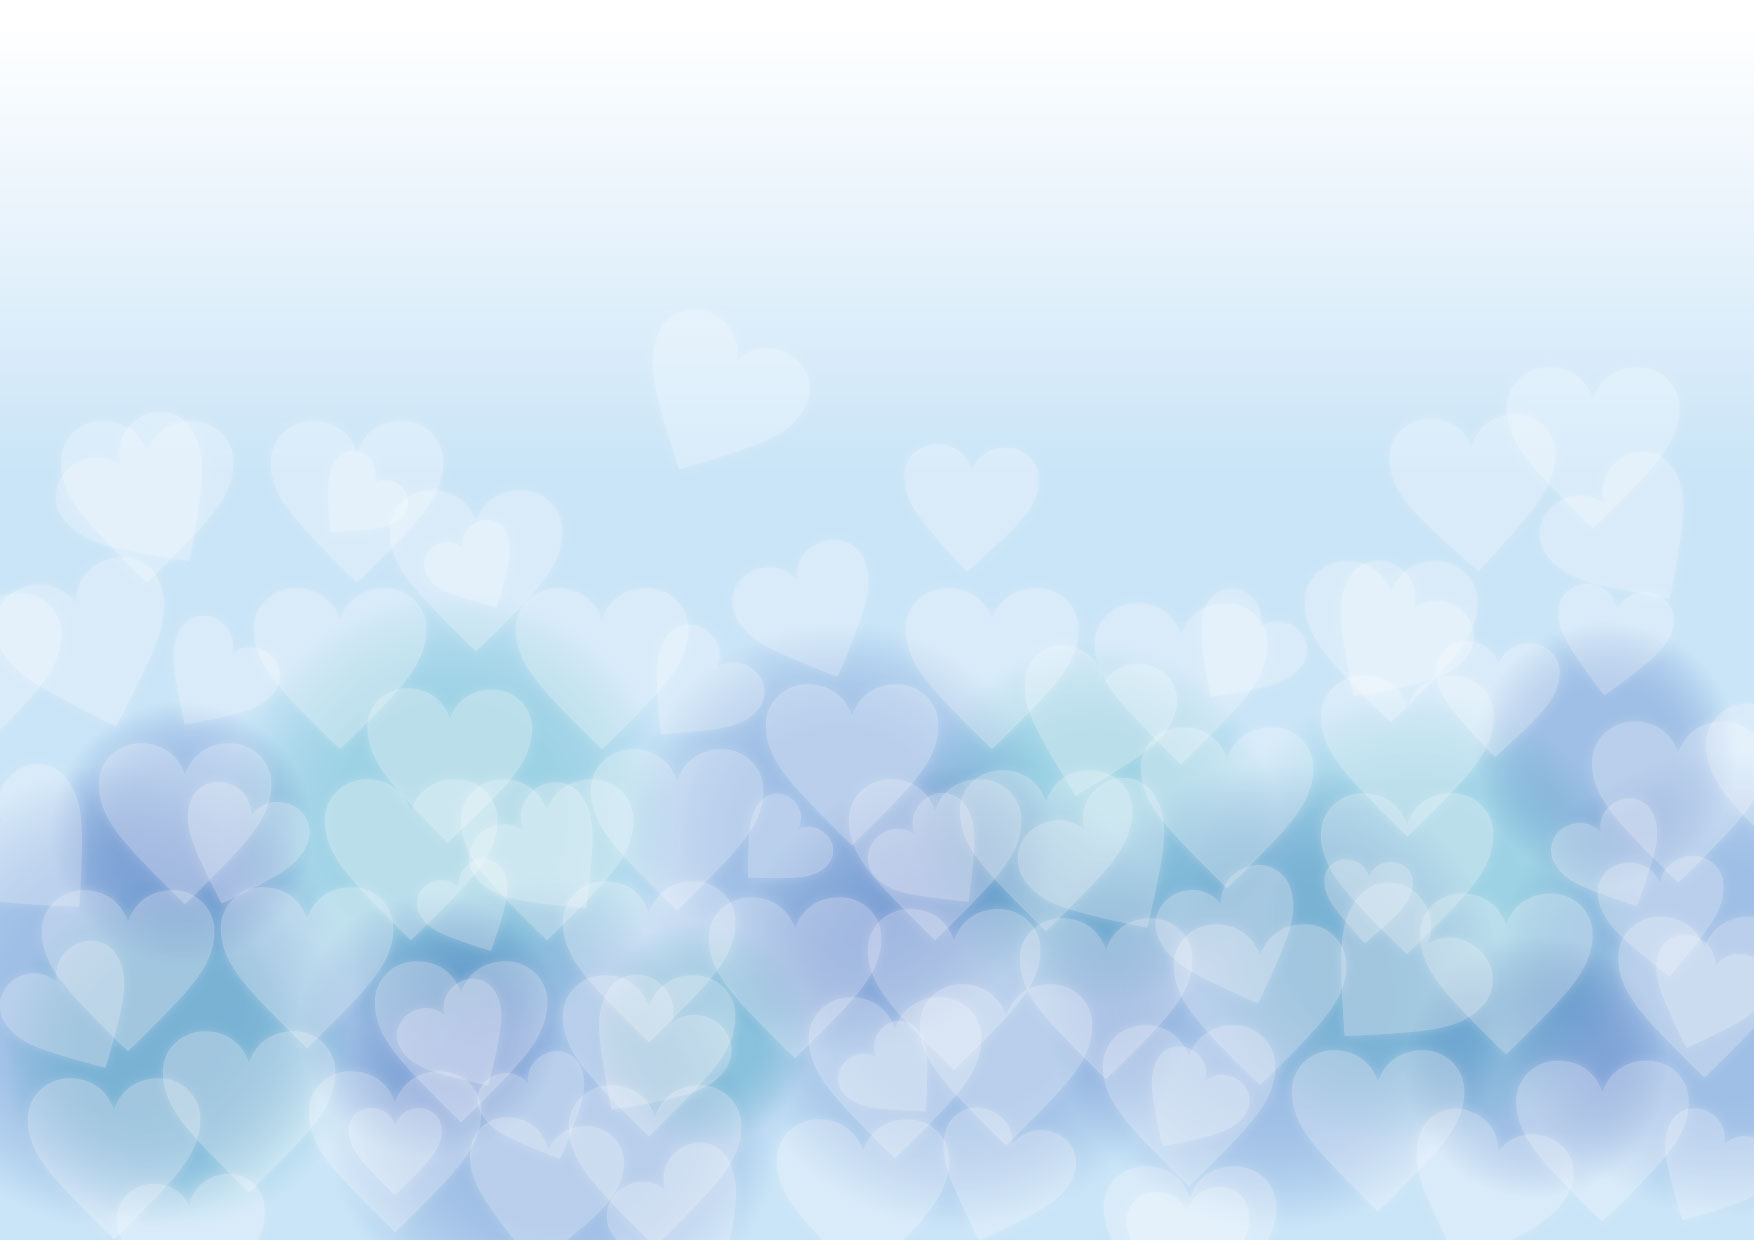 可愛いイラスト無料 バレンタイン 背景 やわらか ブルー ハート Free Illustration Valentine Background Soft Blue Heart 公式 イラストダウンロード